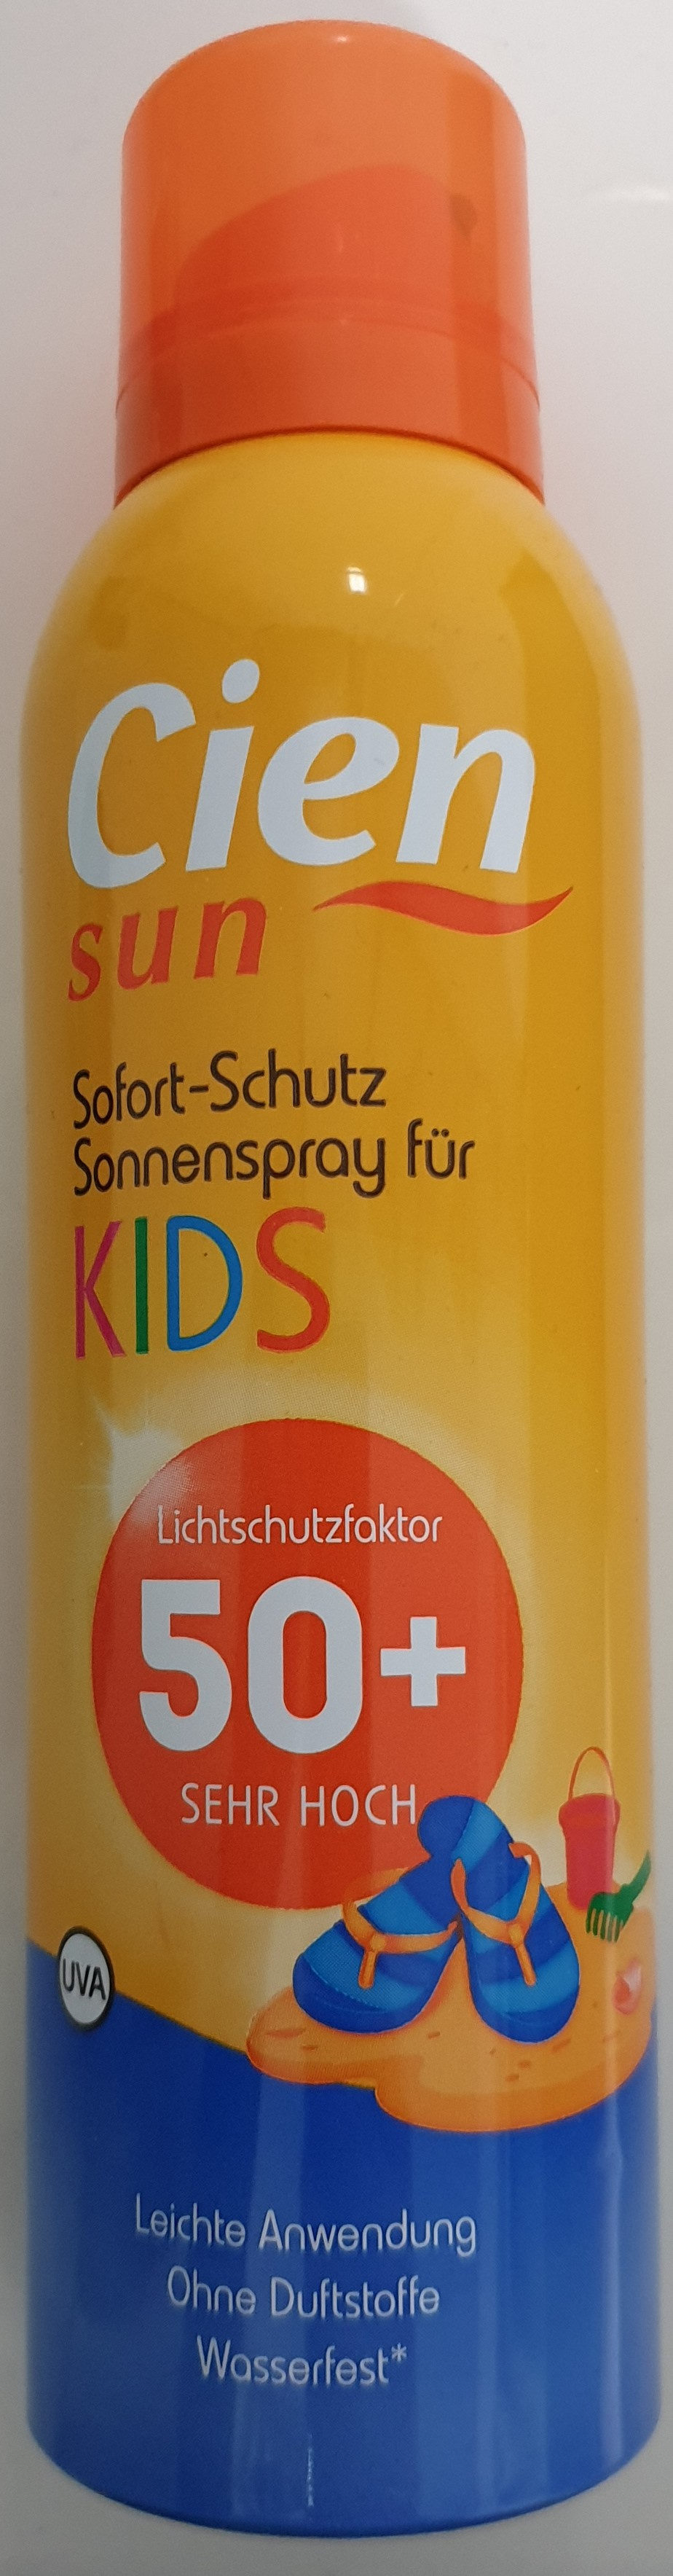 Sofort-Schutz Sonnenspray für Kids 50+ - 製品 - de